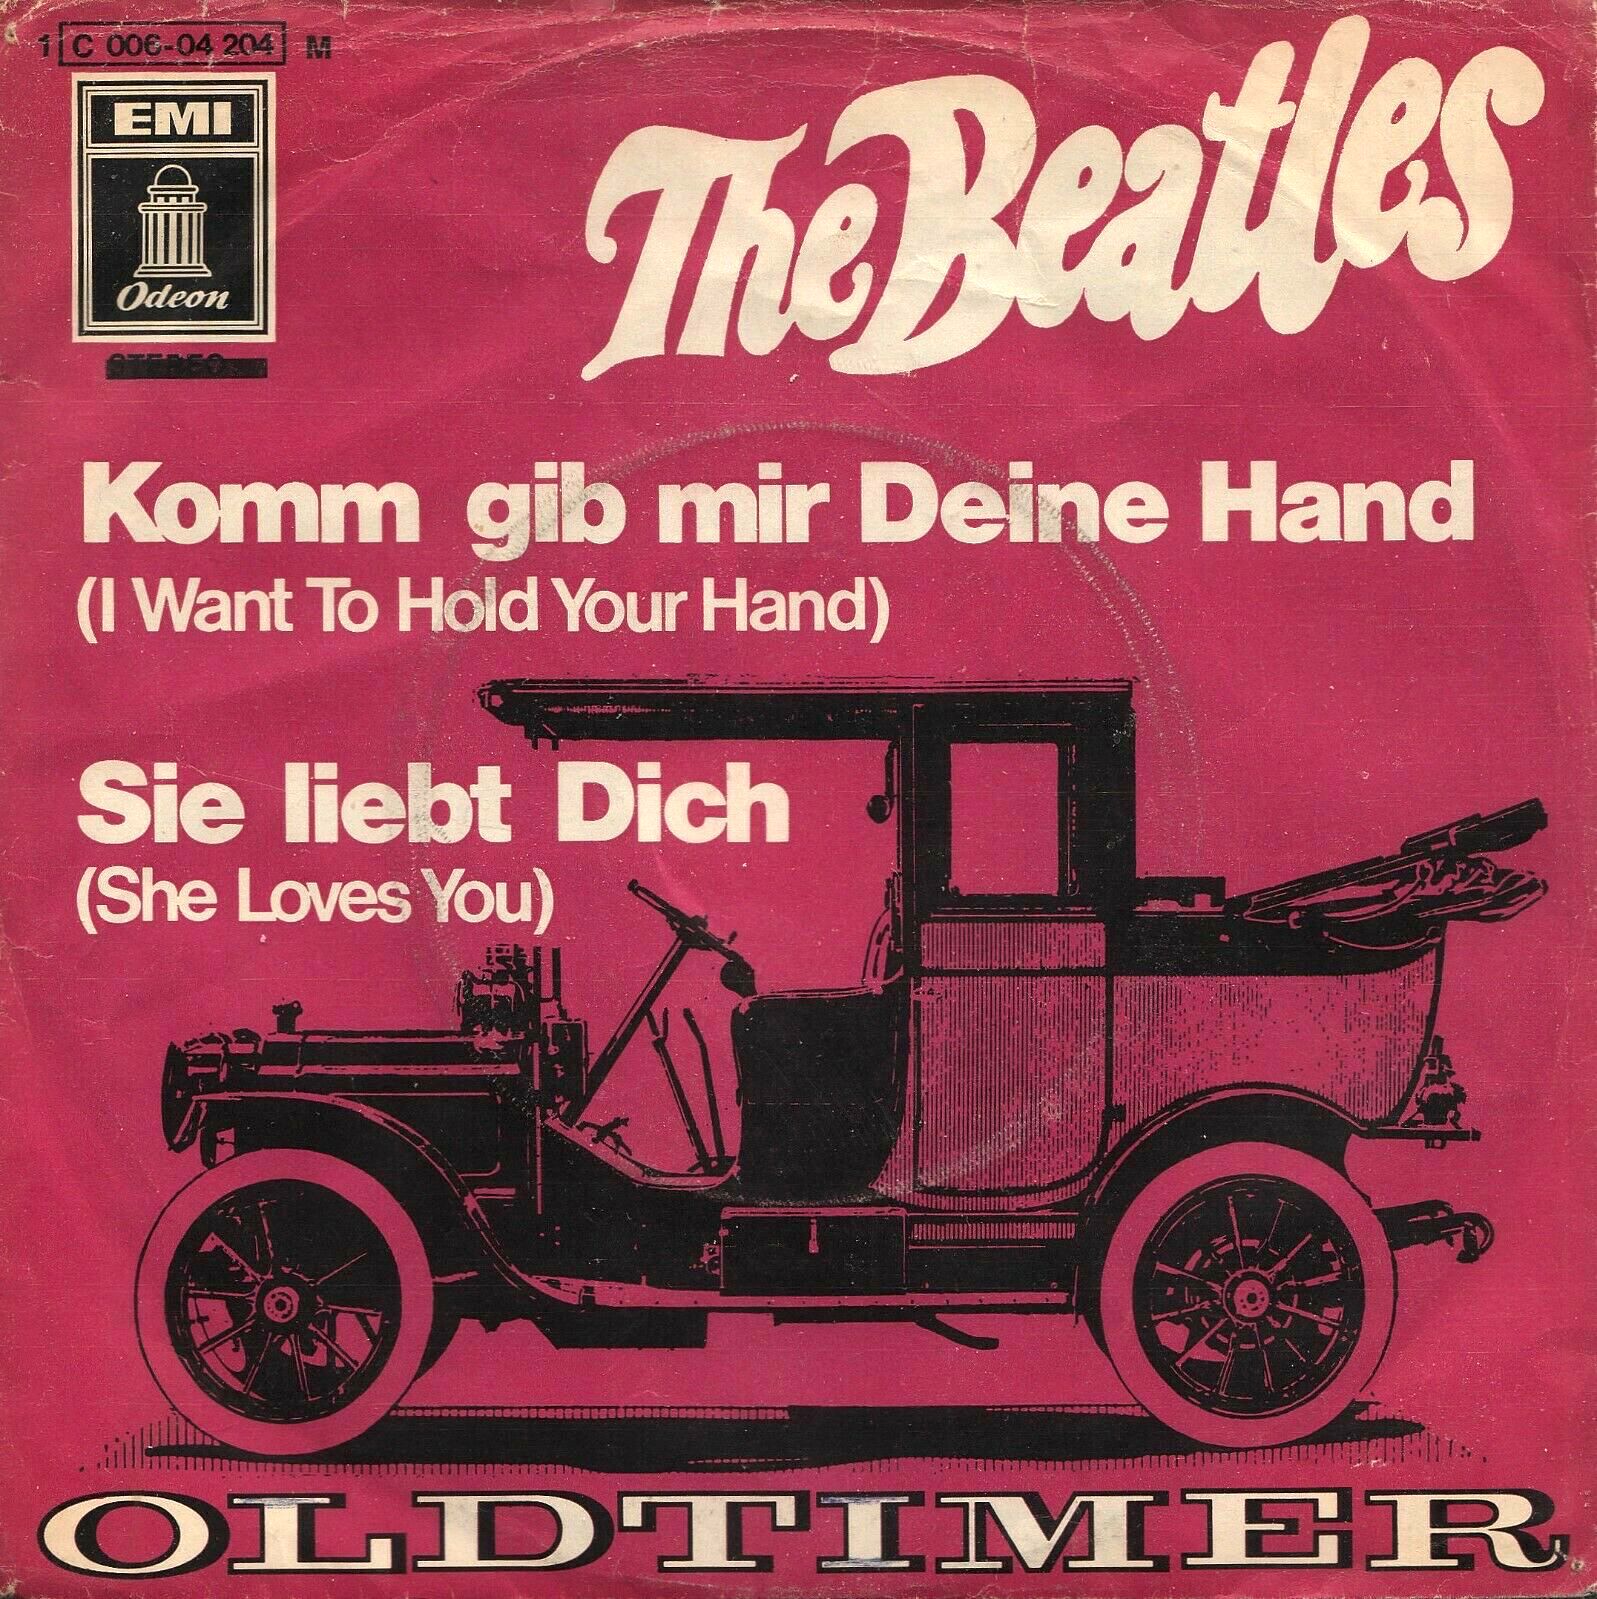 Mir deine. Битлз Komm GIB mir deine hand. Beatles Komm GIB mir. The Beatles German Single. The Beatles Komm, GIB mir deine hand фото.